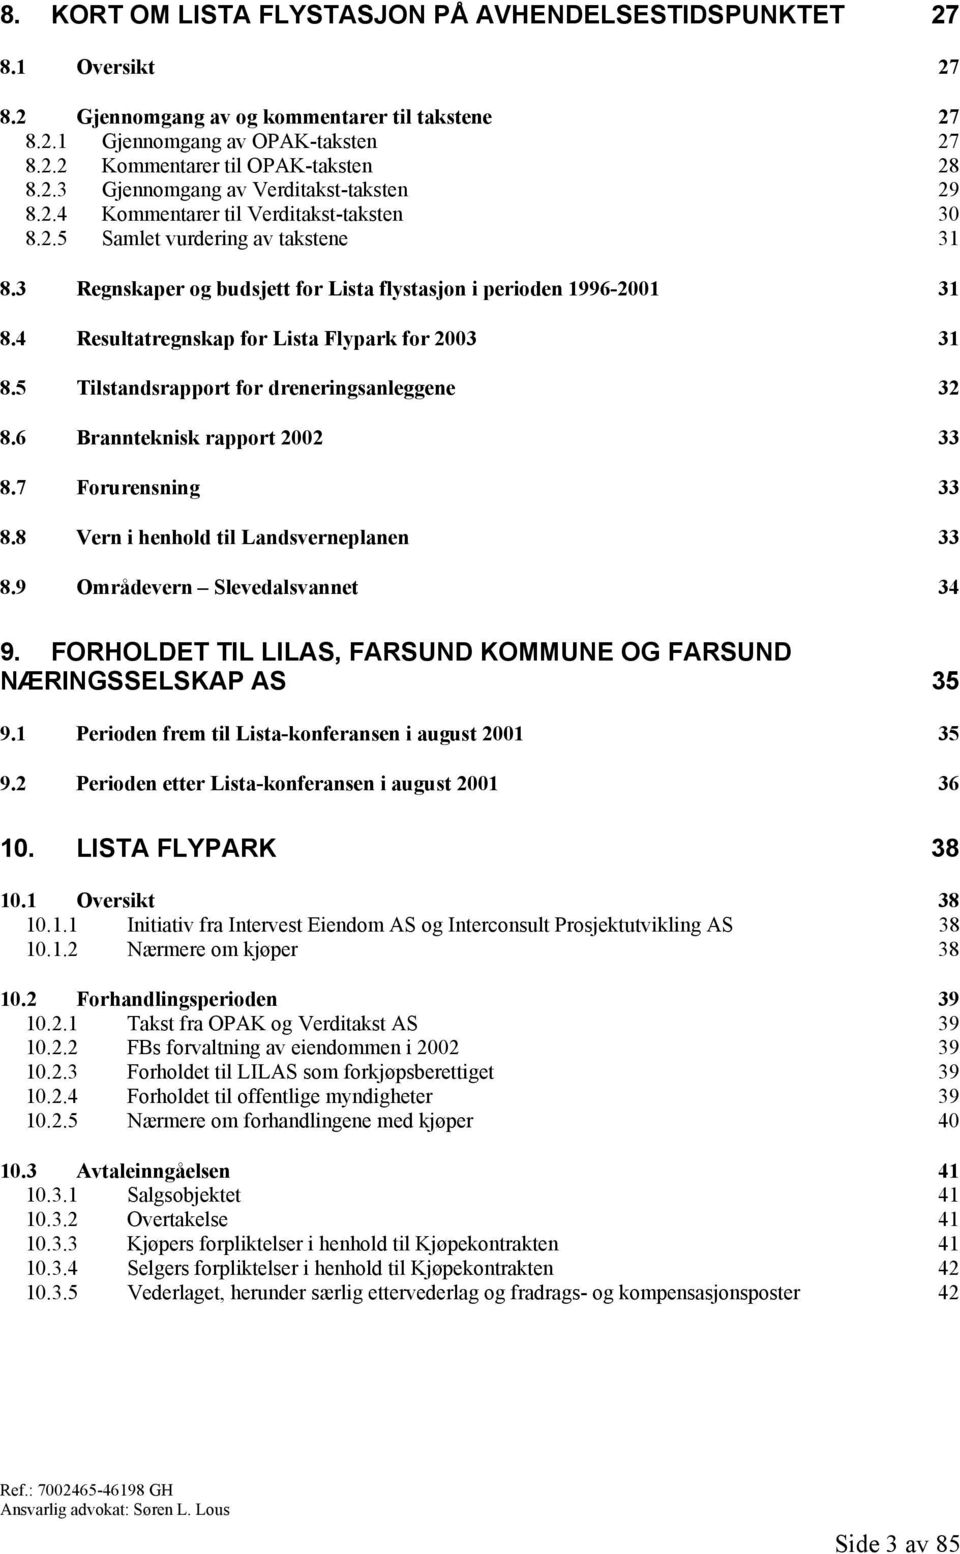 4 Resultatregnskap for Lista Flypark for 2003 31 8.5 Tilstandsrapport for dreneringsanleggene 32 8.6 Brannteknisk rapport 2002 33 8.7 Forurensning 33 8.8 Vern i henhold til Landsverneplanen 33 8.